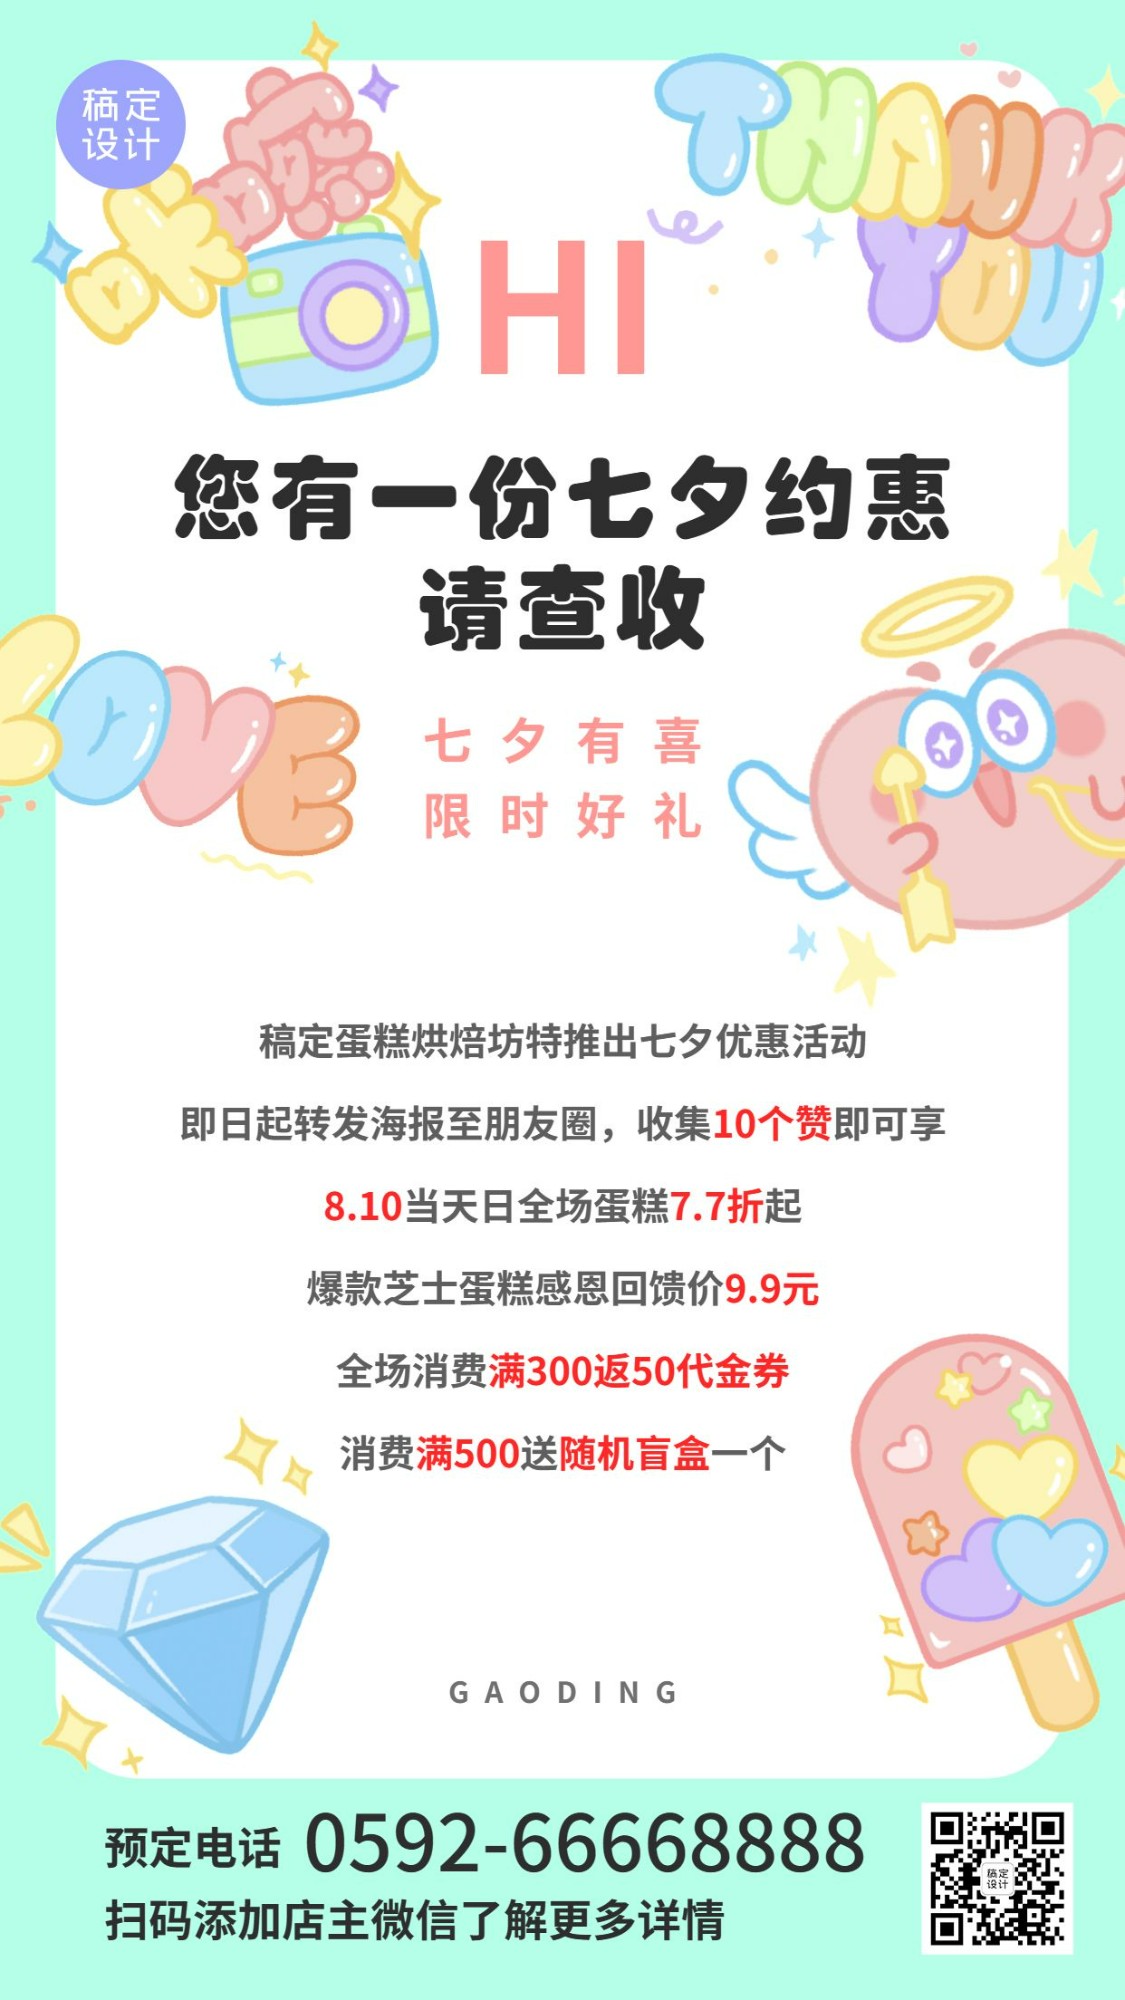 七夕烘焙甜品活动通知简约竖版海报预览效果